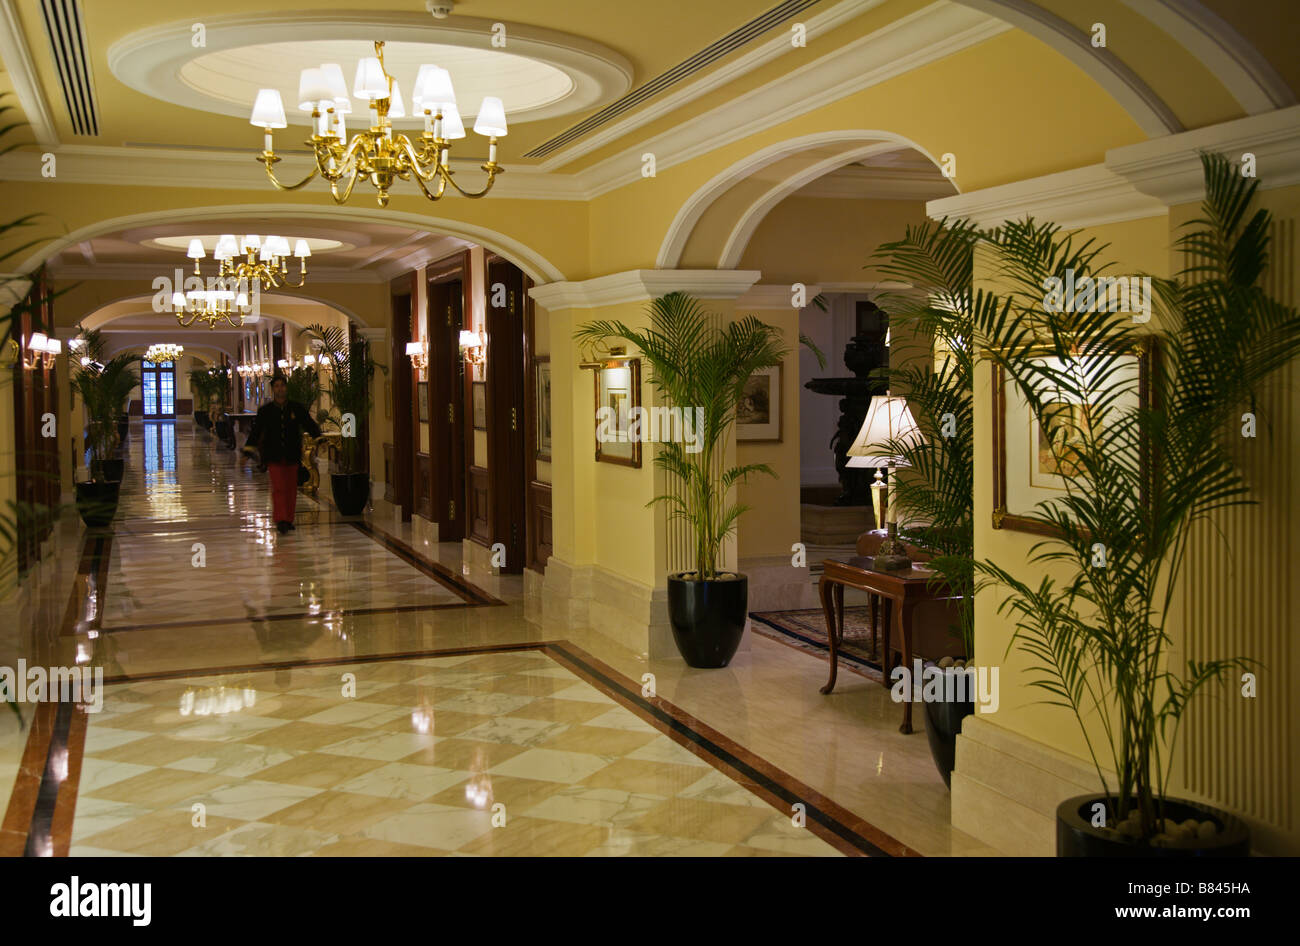 Interieur im 5 Sterne Hotel Imperial in Neu Delhi Indien Stockfoto